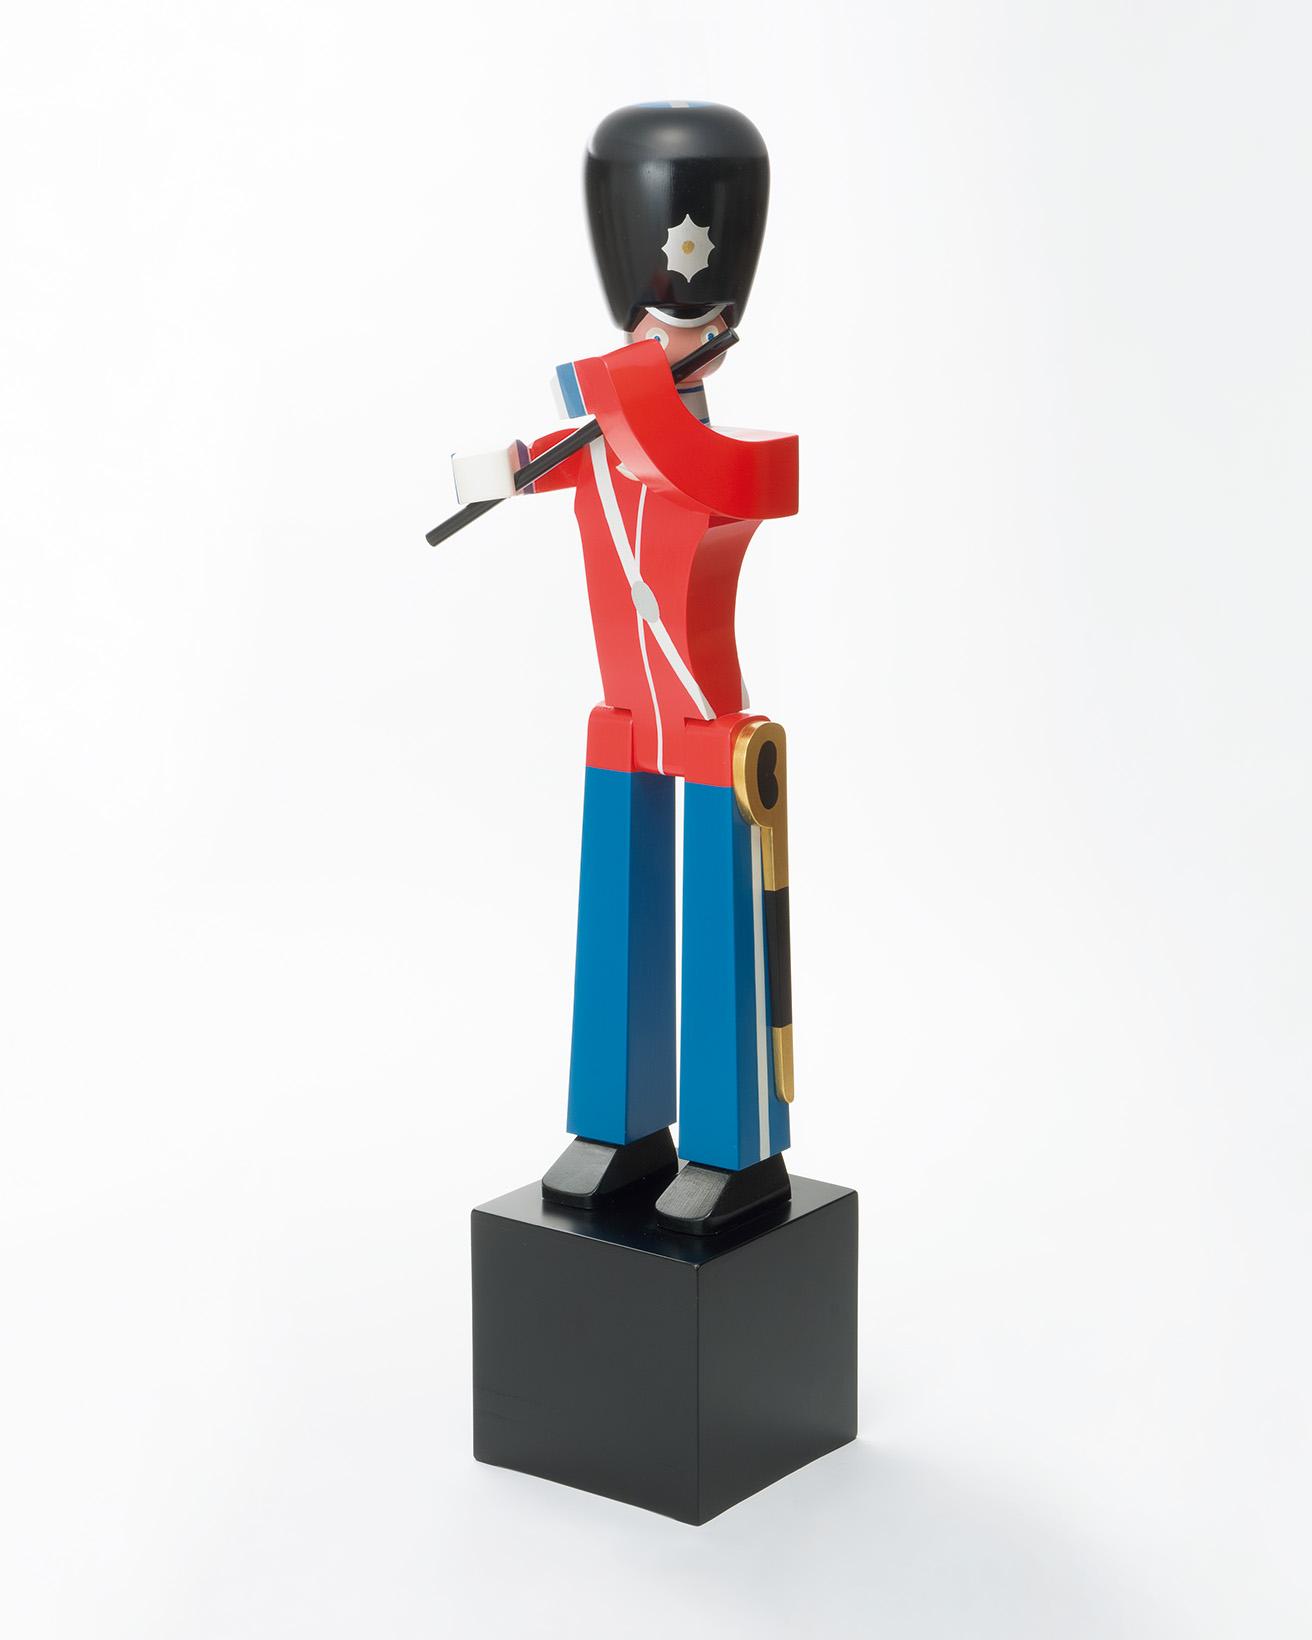 TOY SOLDIER by Kay Bojesen
デンマークのカイ・ボイスンによる木製玩具。赤い上着と青いズボンのこちらはデンマーク王室の近衛兵をモデルにしたもの。高さ126㎝のラージサイズは、1954年当時にも製品化されていた。この作品は復刻品。